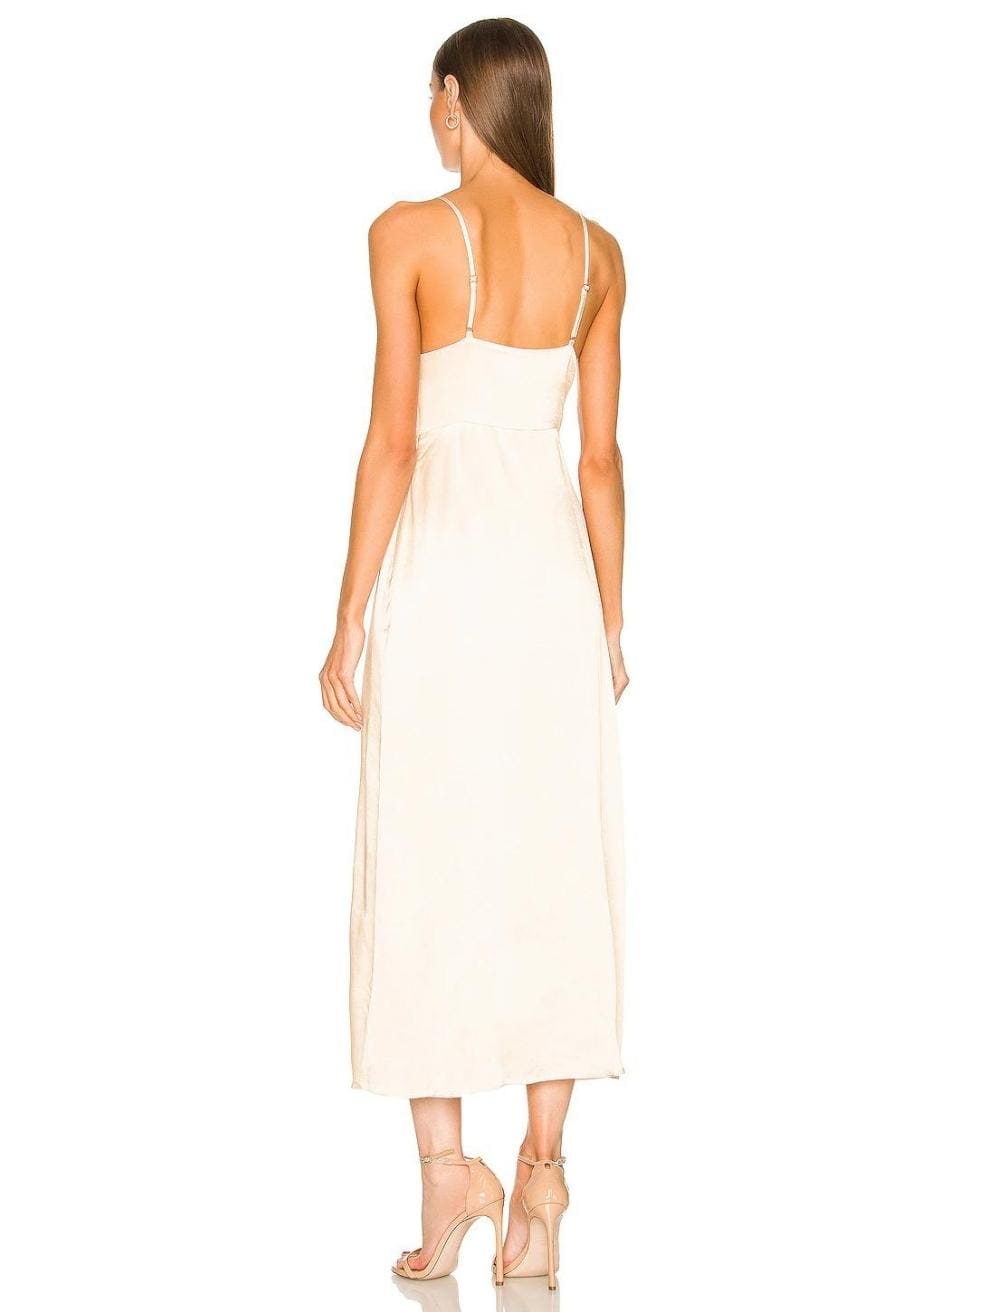 Shona Joy La Lune Lace Back Maxi Dress in Cream